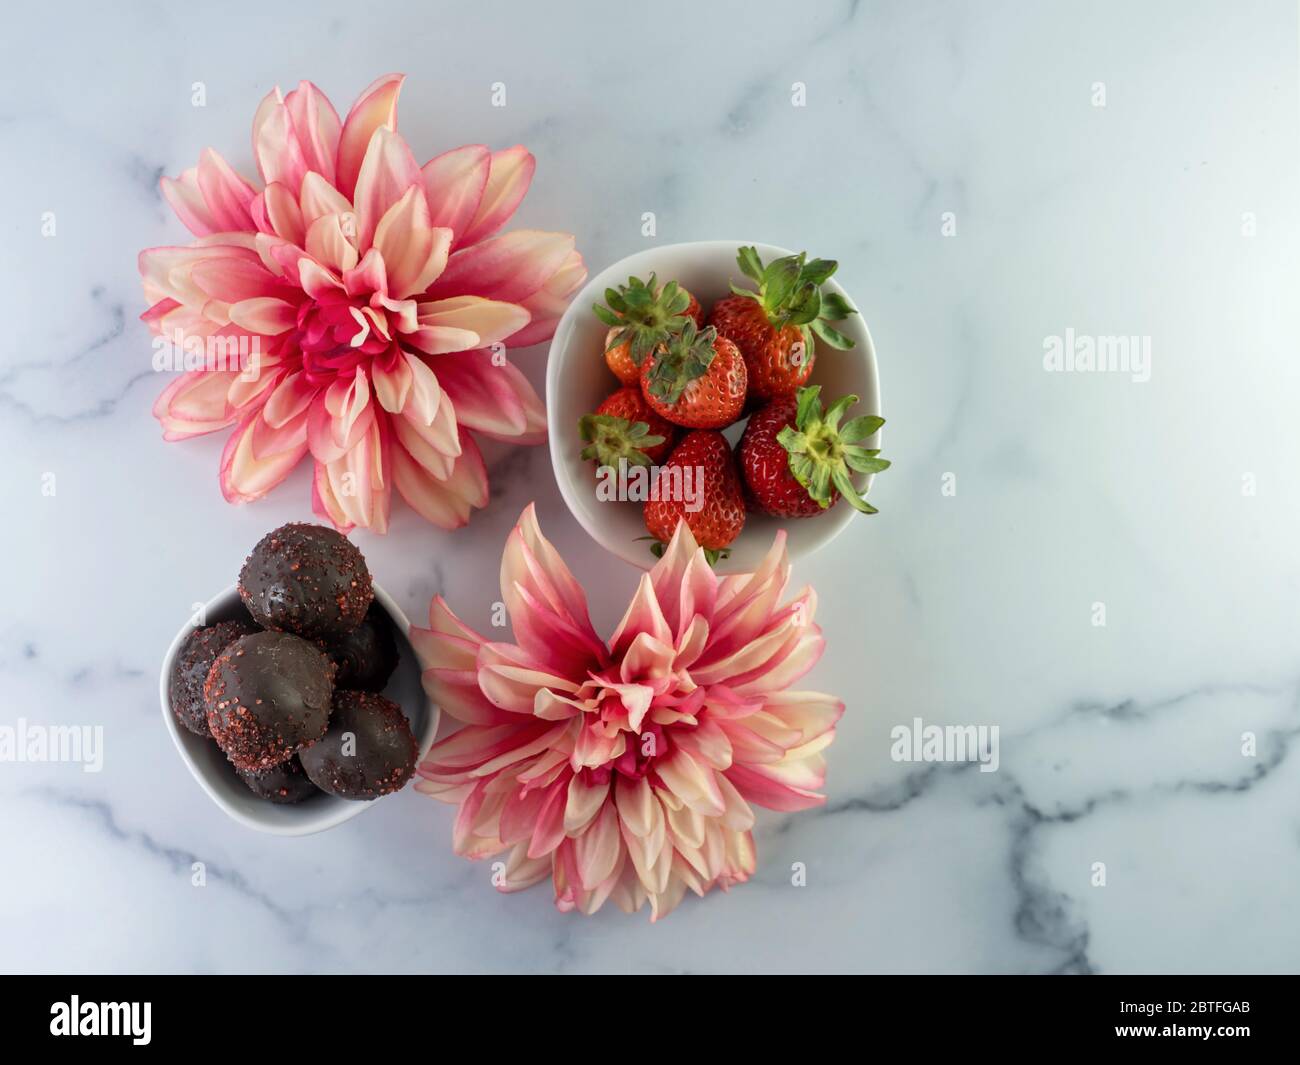 Flach legen Fotografie einer Schüssel voller Erdbeeren und eine Schüssel voll von Schokolade bedeckt Erdbeerkuchen Kugeln mit zwei rosa Dahlia Kunstblume Stockfoto